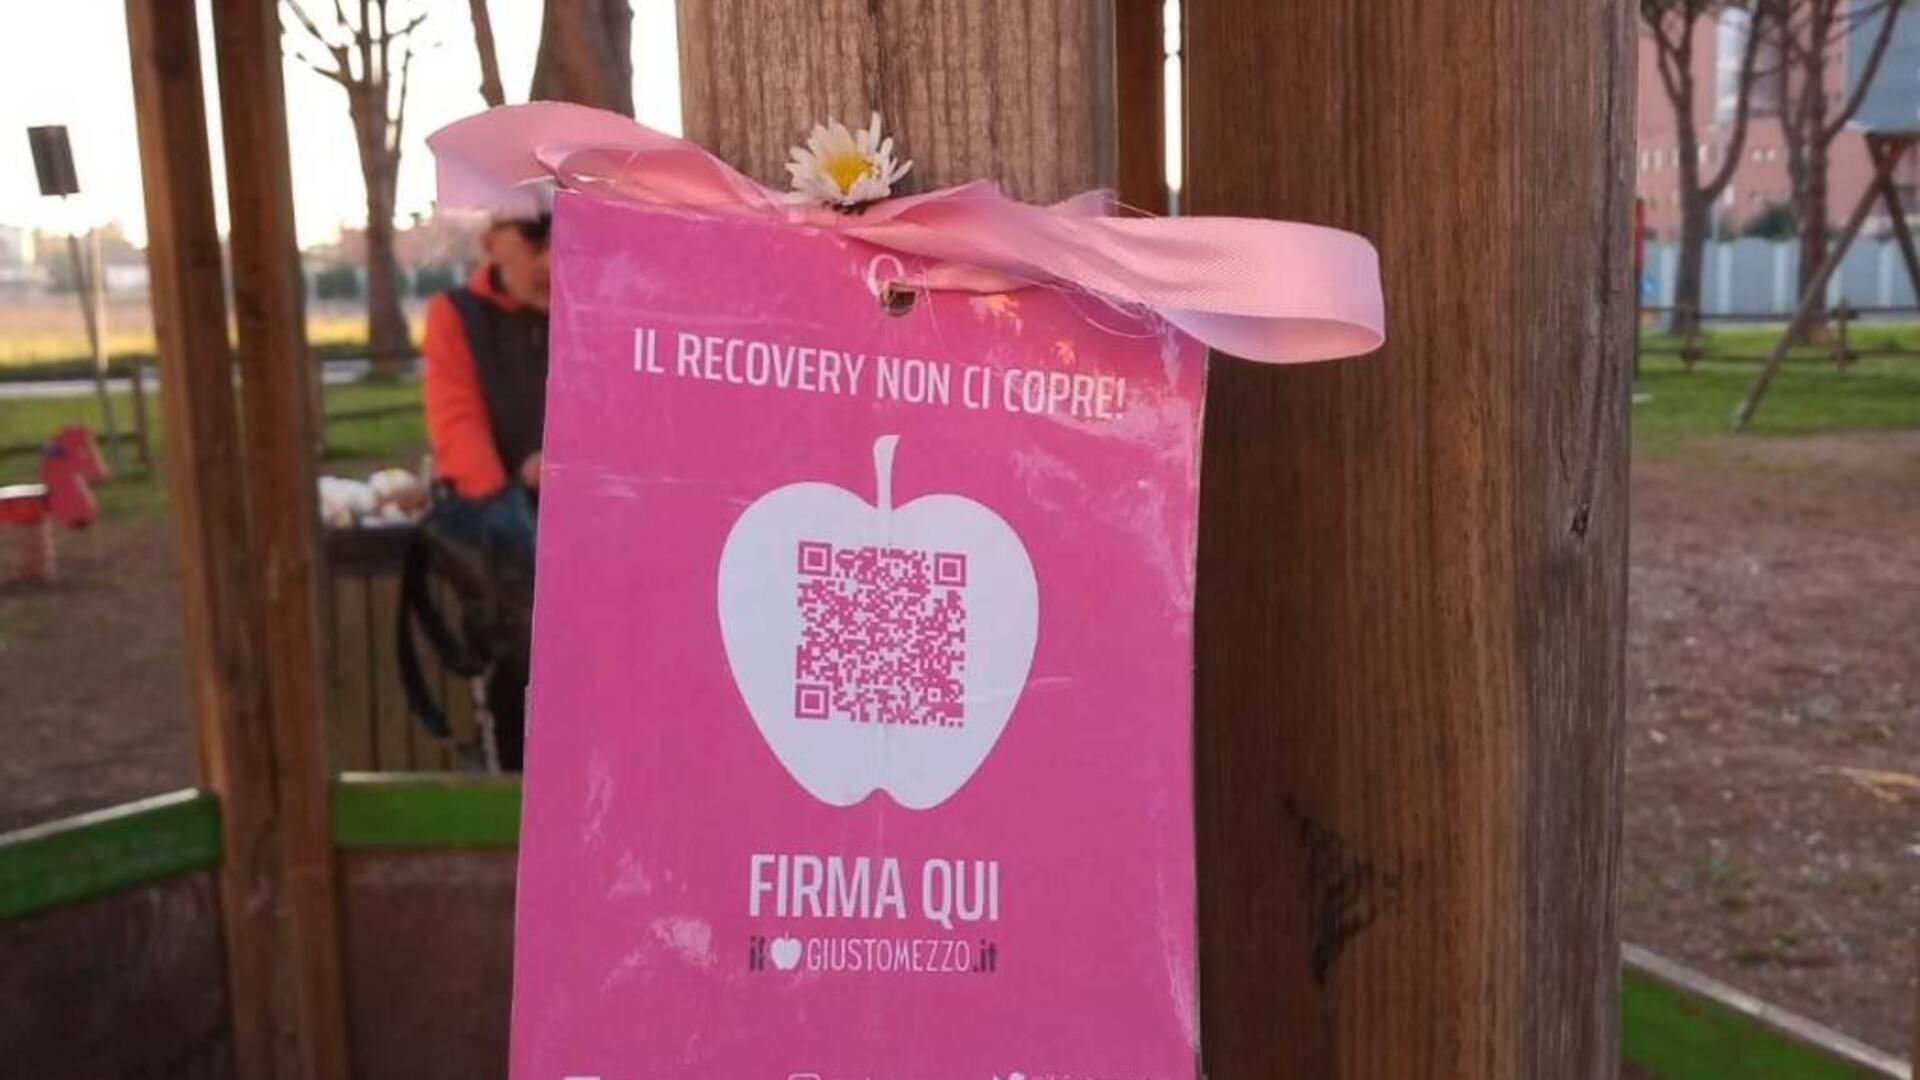 Cartoline rosa appese in tutta Italia per chiedere che il Recovery Fund sia usato per la parità di genere